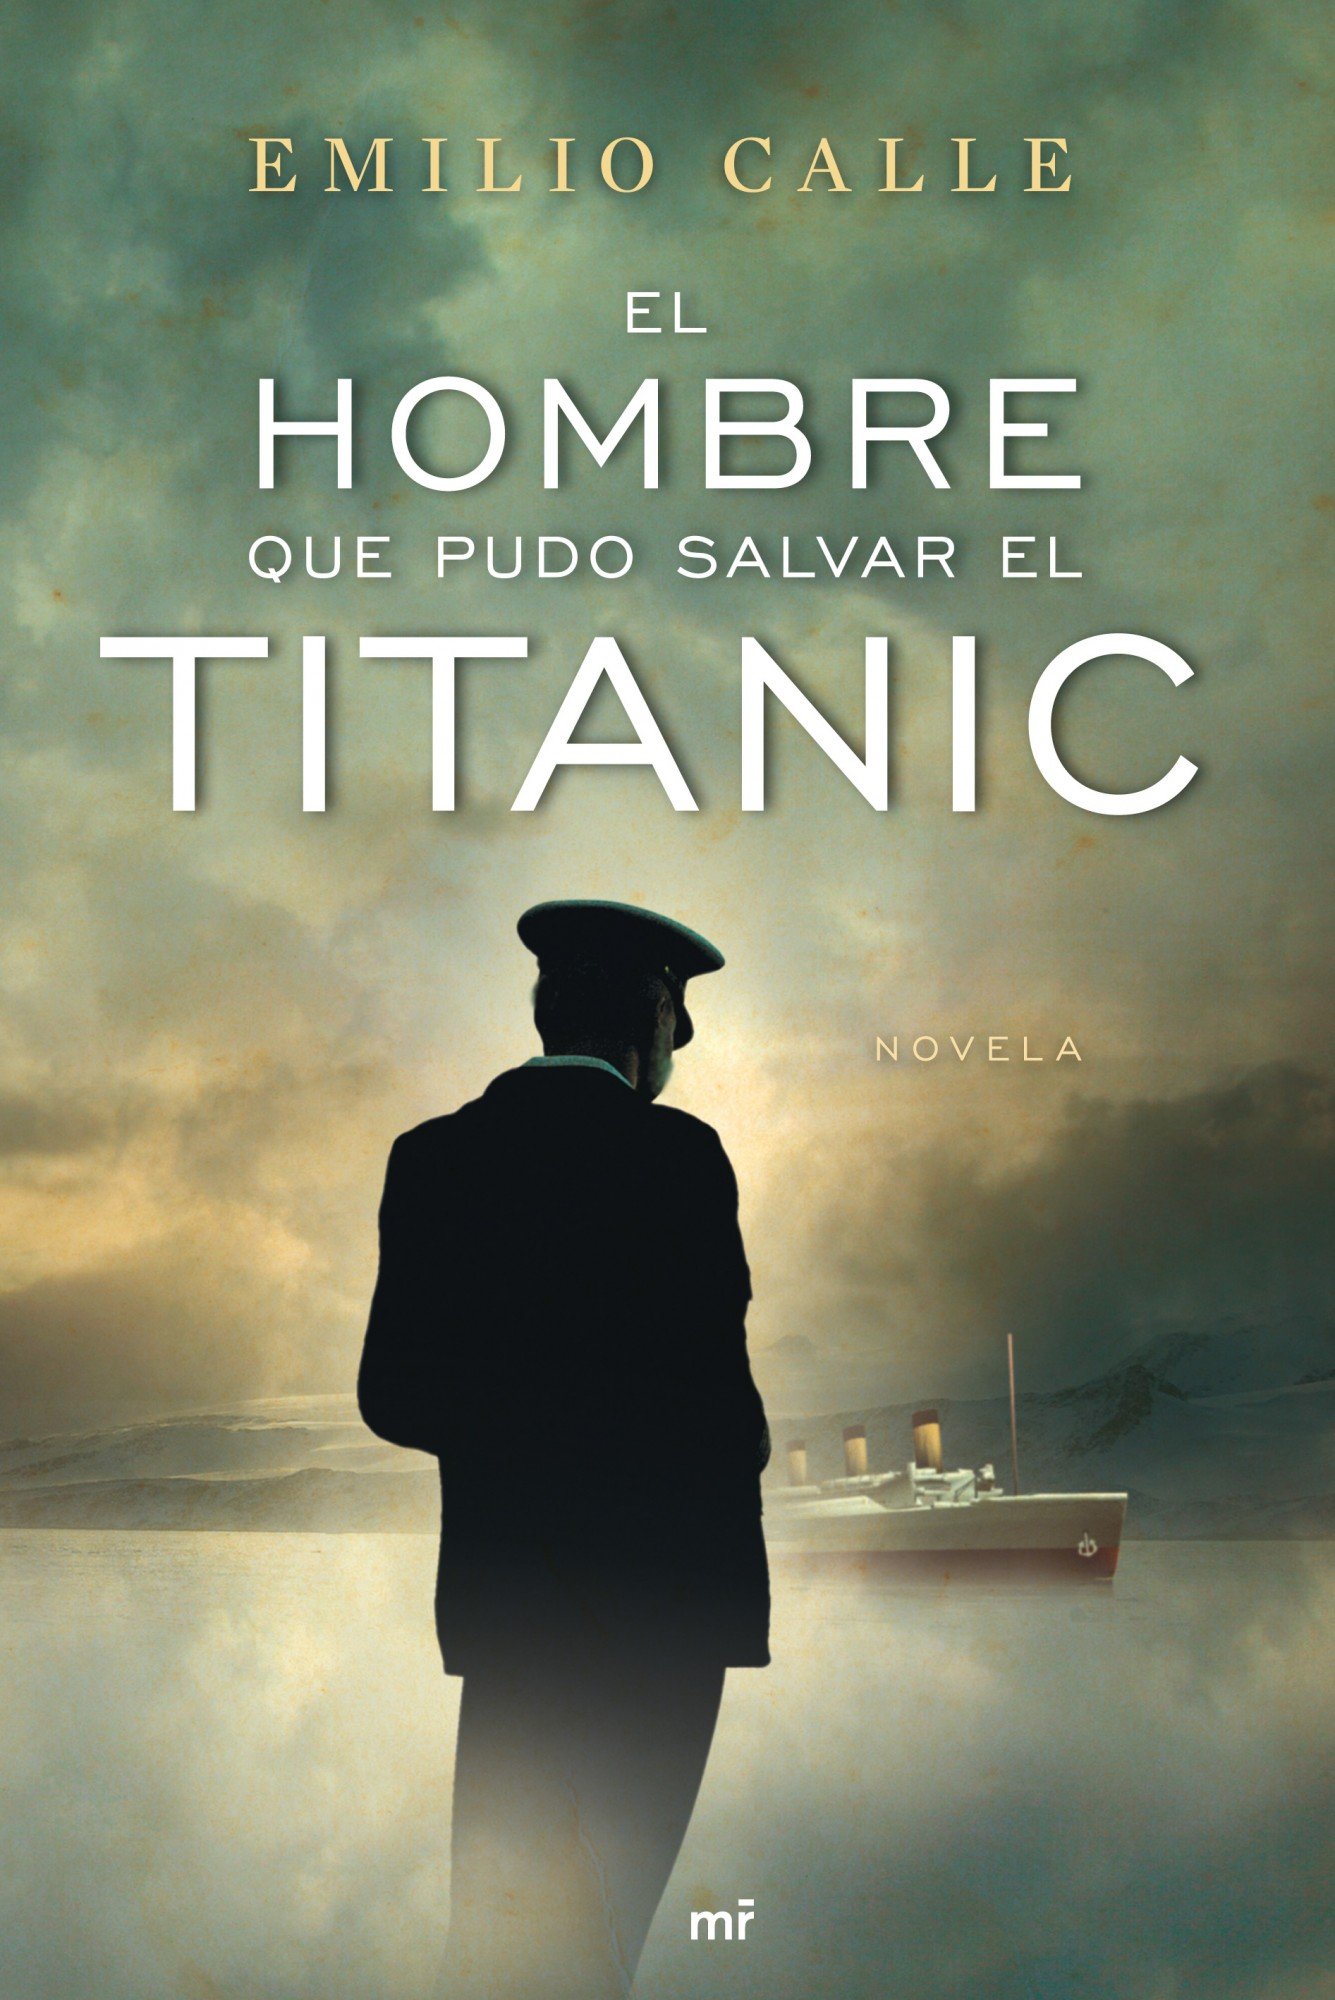 'El hombre que pudo salvar el Titanic', de Emilio Calle, (2010)